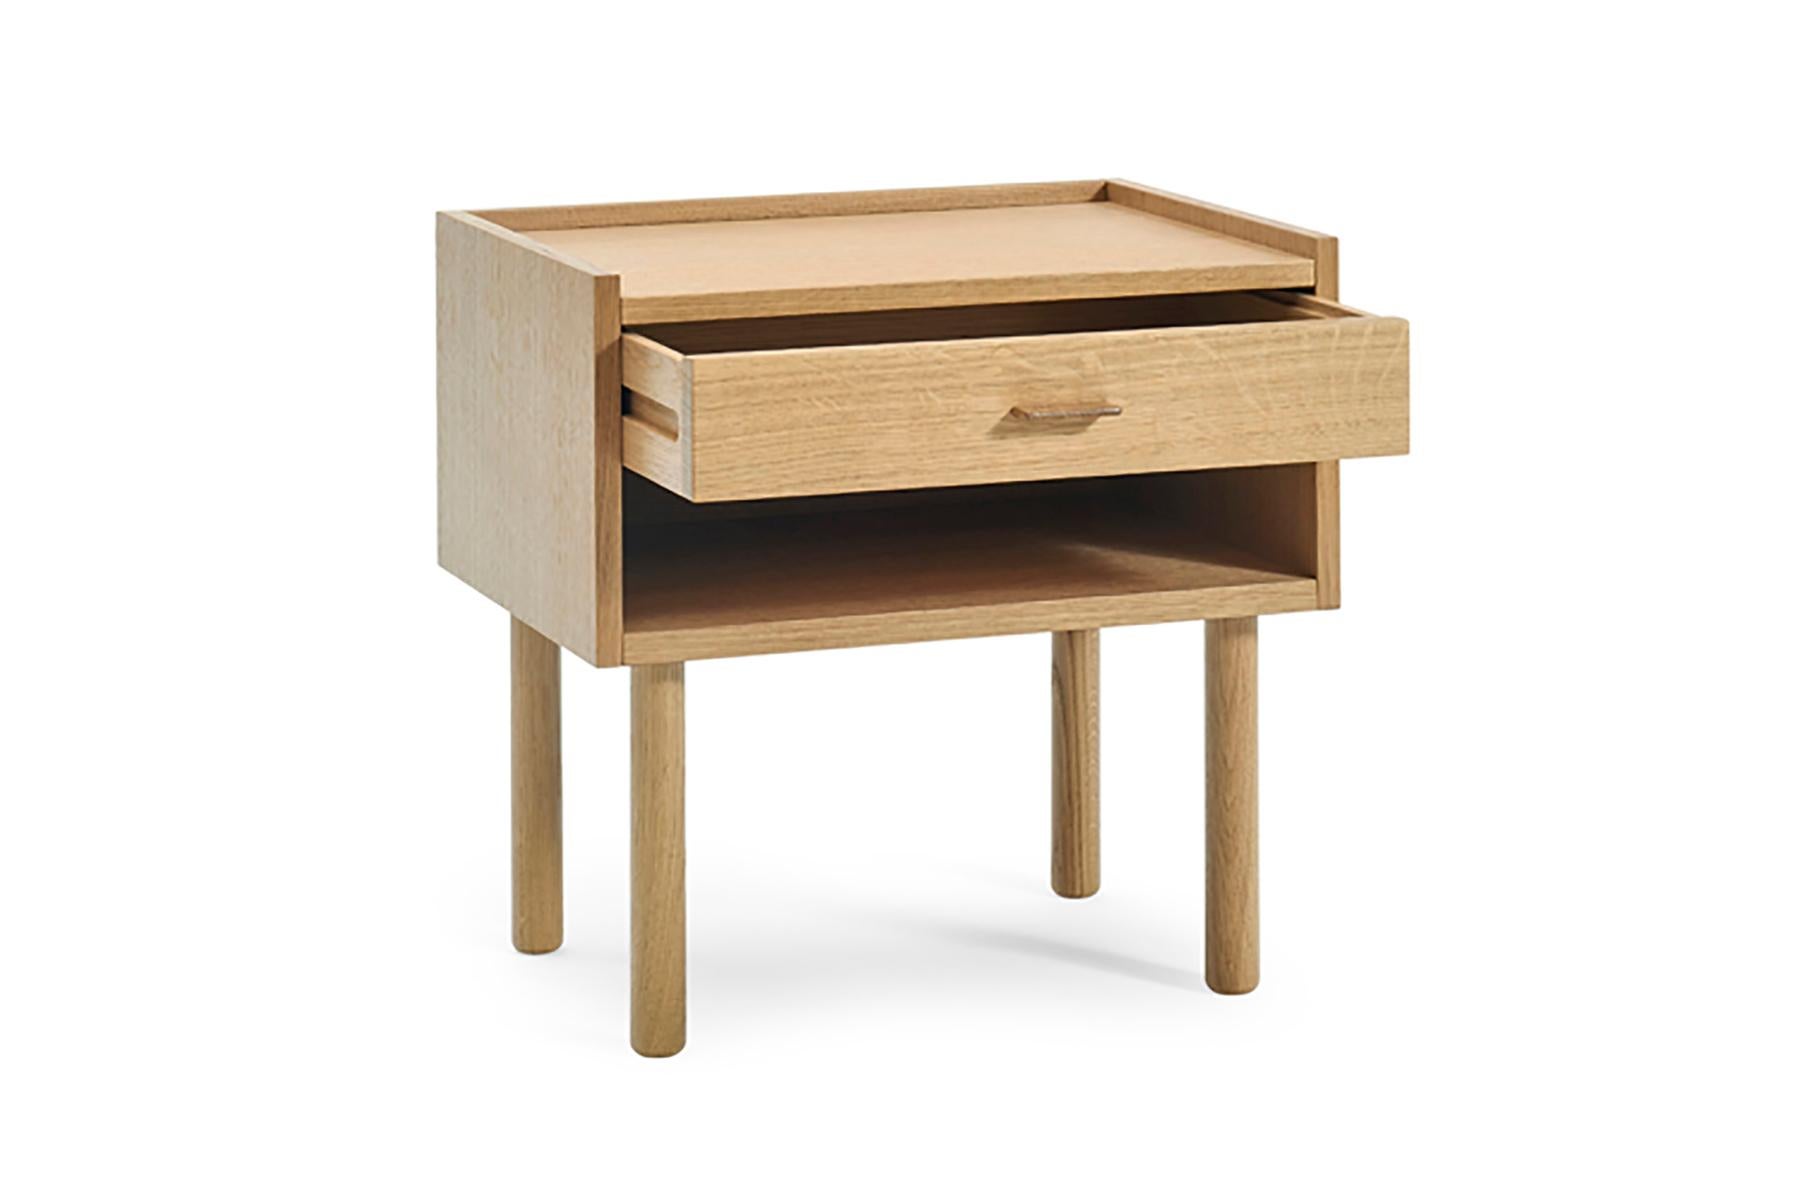 Der Nachttisch 430 wurde 1969 von Hans Wegner für GETAMA entworfen und zeichnet sich durch eine unvergleichliche Handwerkskunst aus. Diese Kommode wird in der GETAMA-Fabrik in Gedsted, Dänemark, von erfahrenen Tischlern nach traditionellen